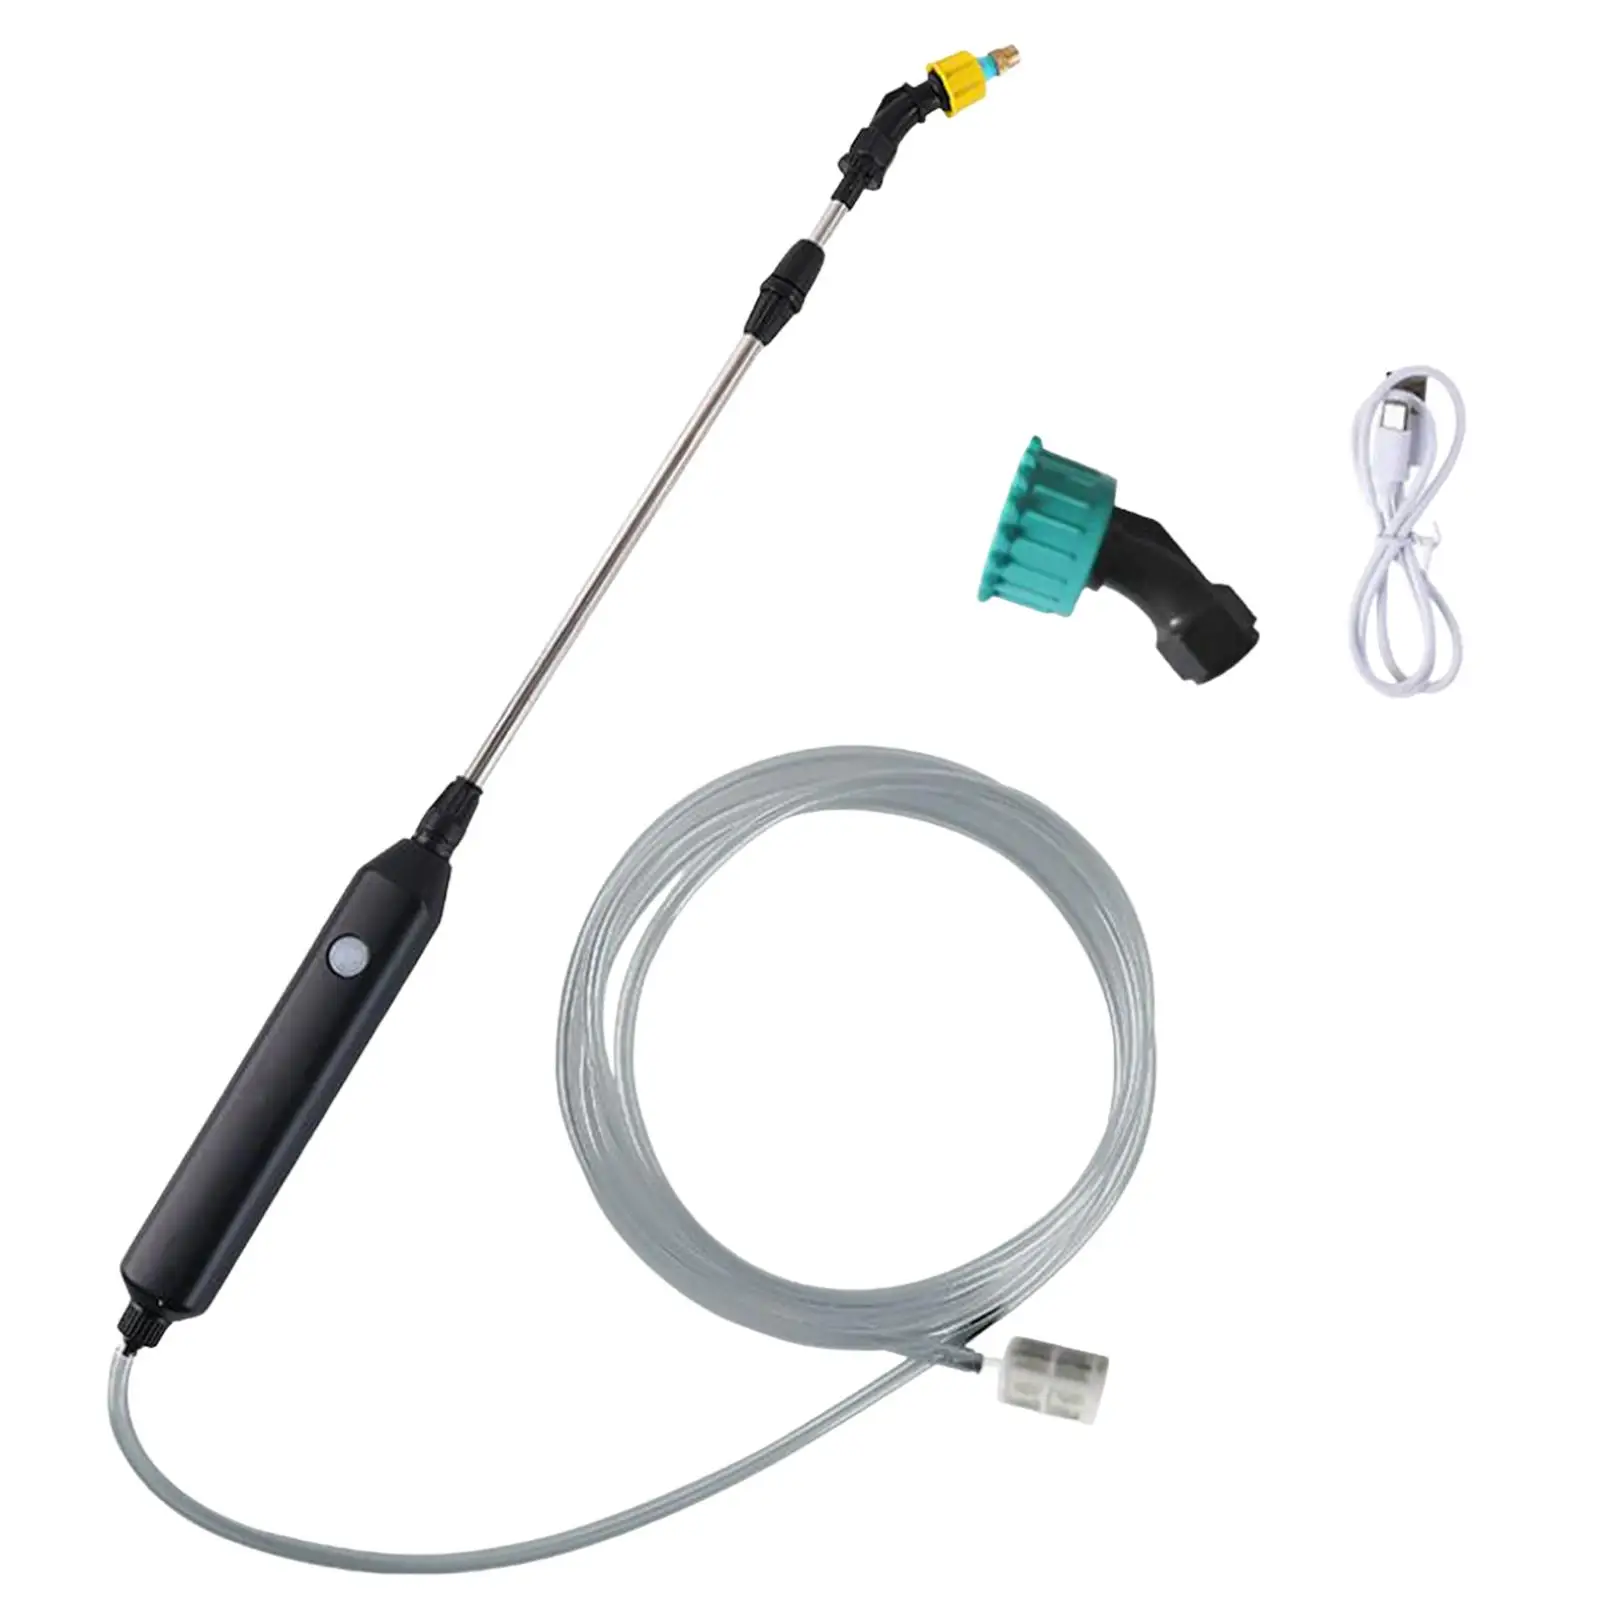 Electric Gardening Sprayer Rechargeable Garden Water Jet for Gardening Watering